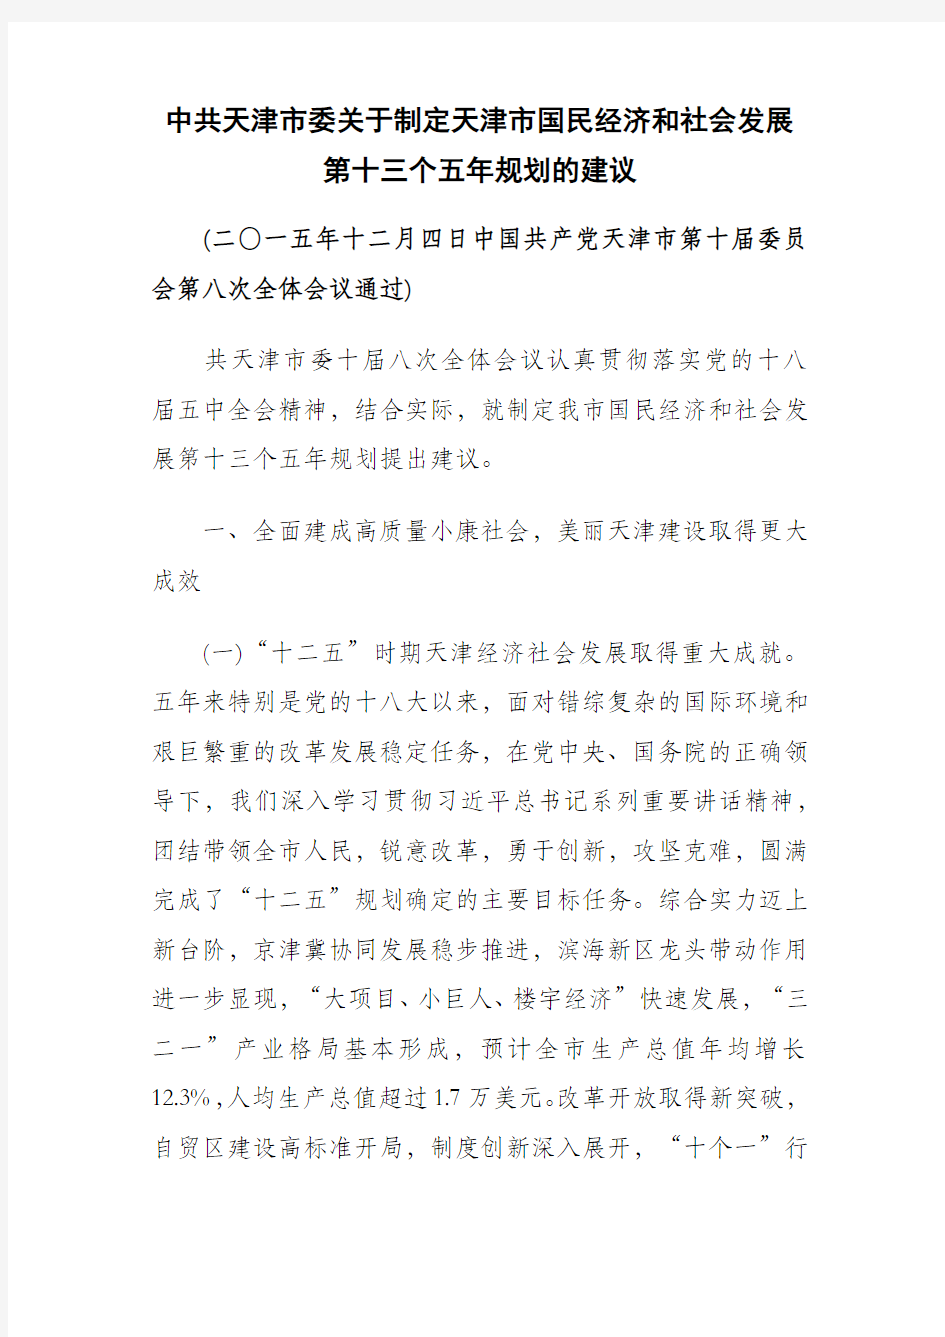 中共天津市委关于制定天津市国民经济和社会发展第十三个五年规划的建议